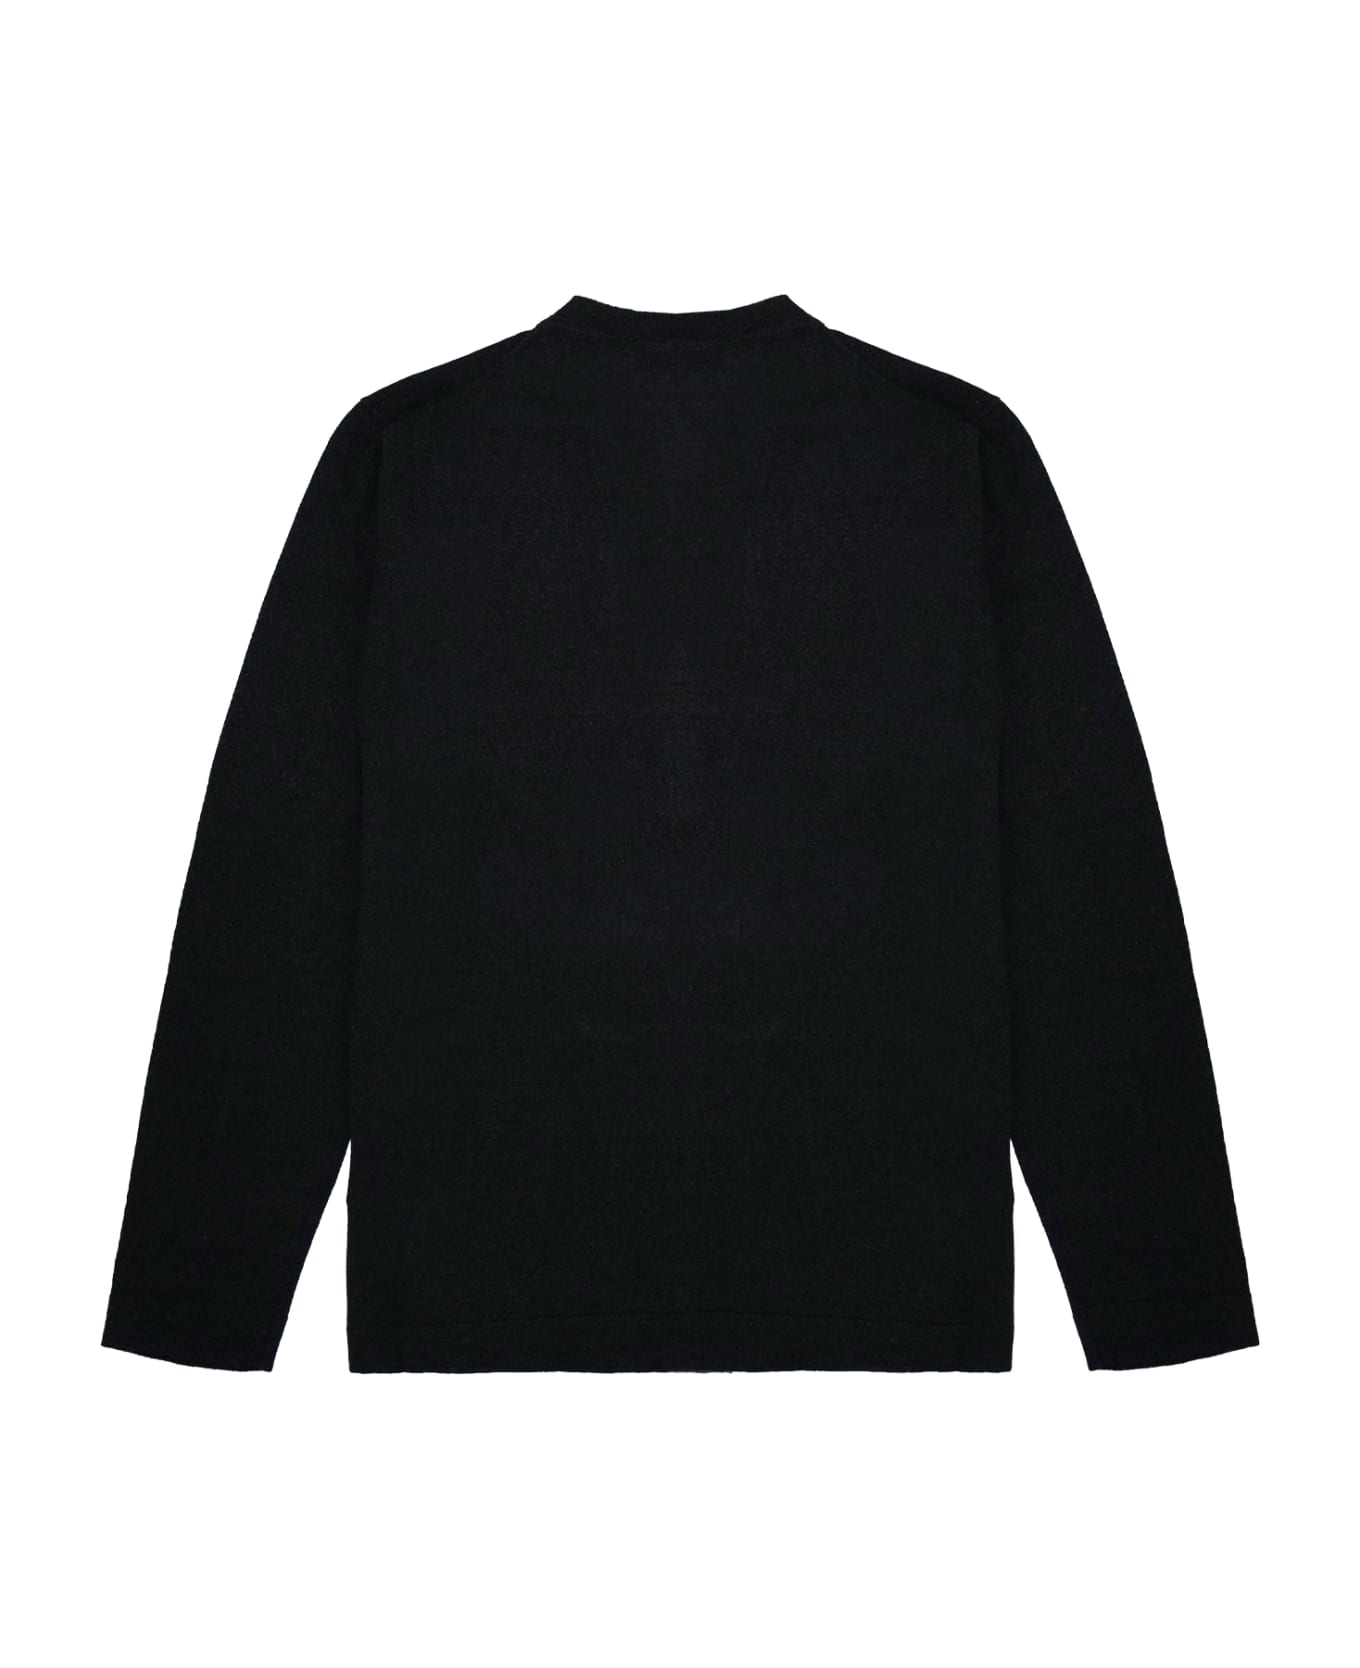 Filippo De Laurentiis Sweater - Black